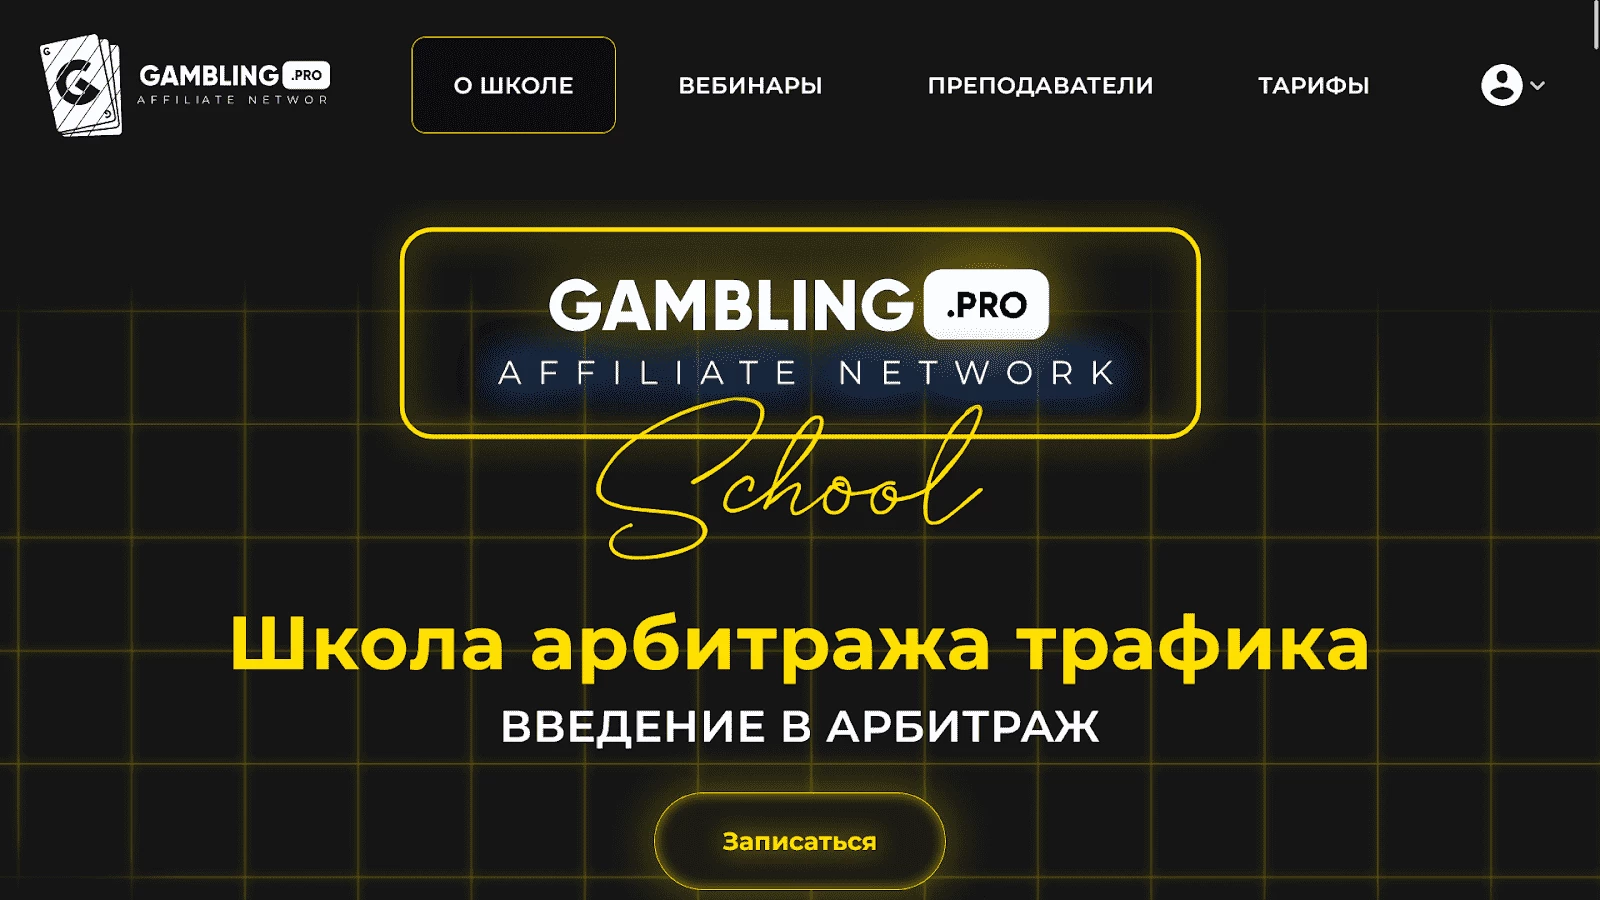 Курс от Gambling.pro